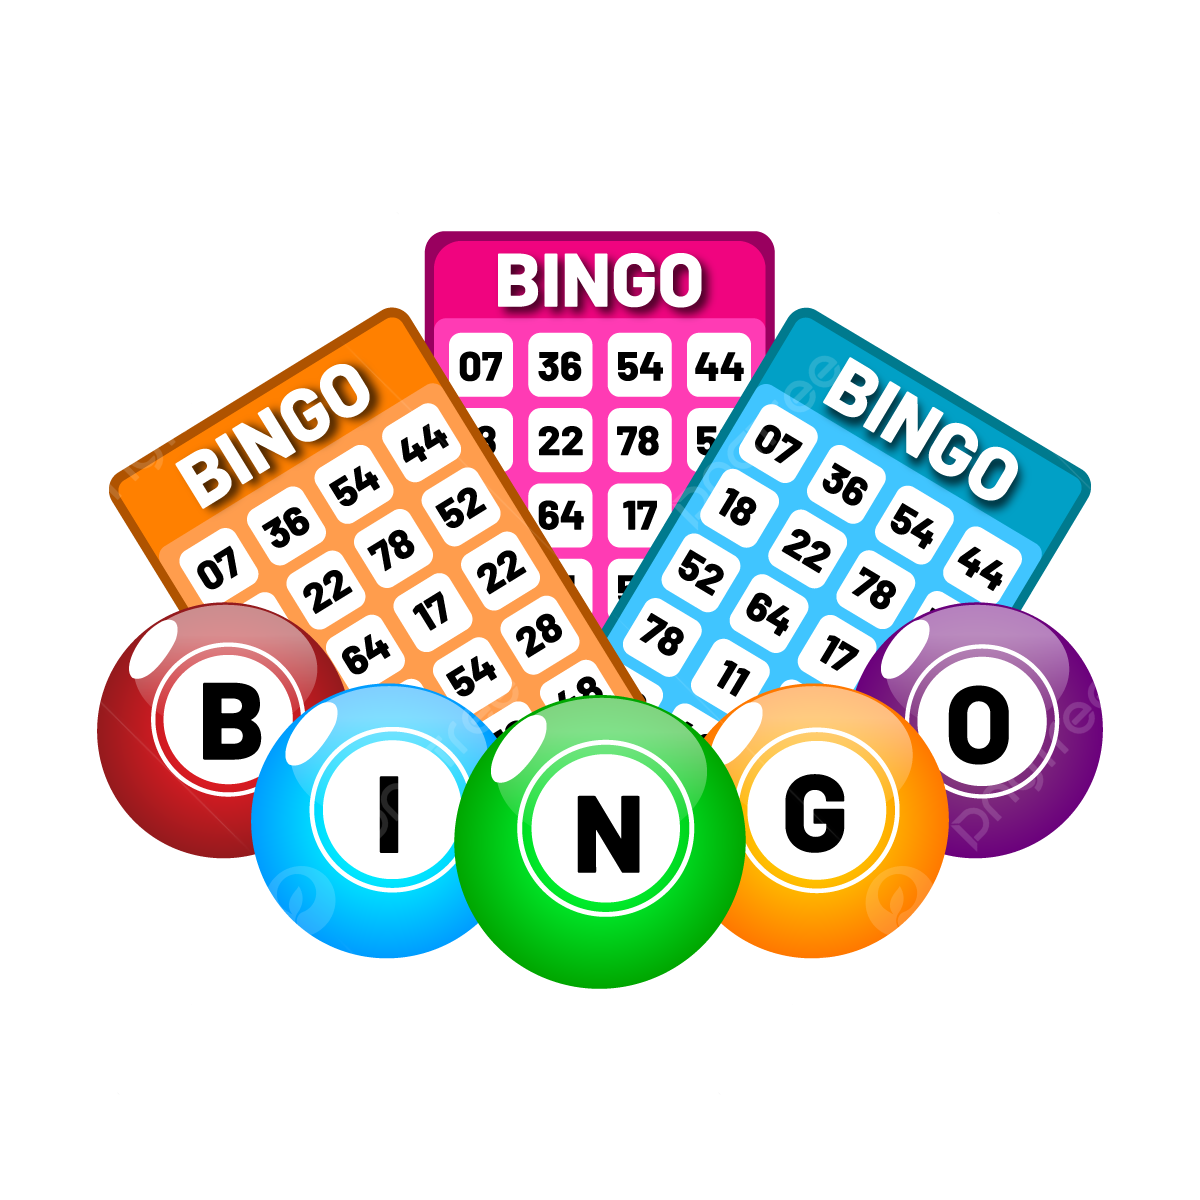 Tận hưởng những lợi ích tuyệt vời của trò chơi Bingo V7SB tại V7SB